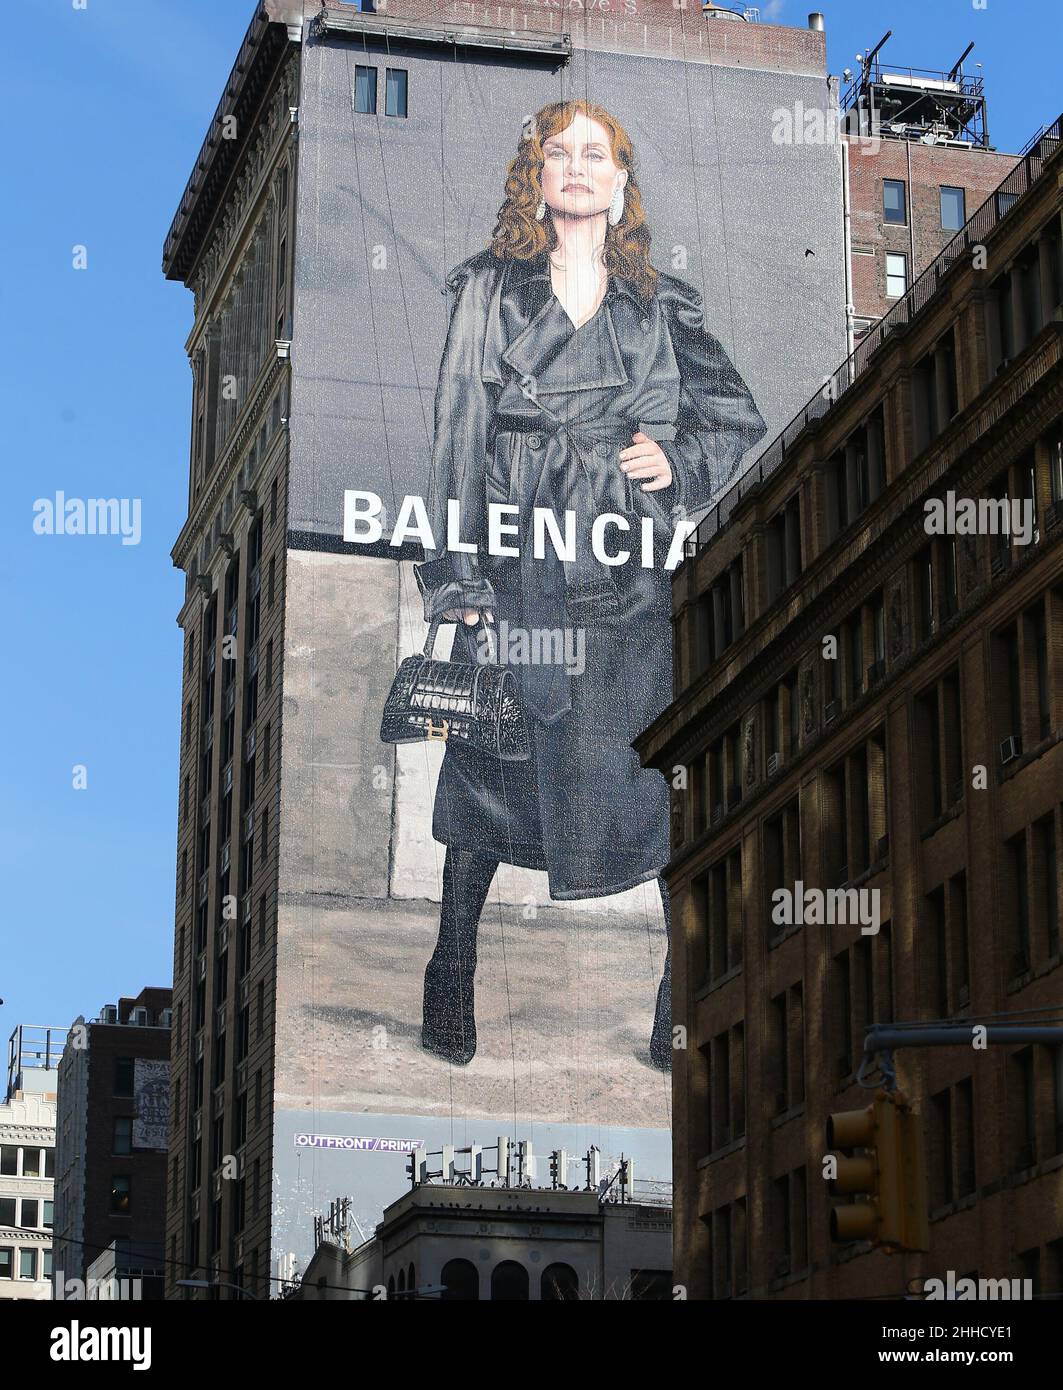 L'attrice francese Isabelle Huppert è il volto della campagna Balenciaga  con un grande murale pubblicitario a New York, NY il 23 gennaio 2022. Foto  di Charles Guerin/ABACAPRESS.COM Foto stock - Alamy